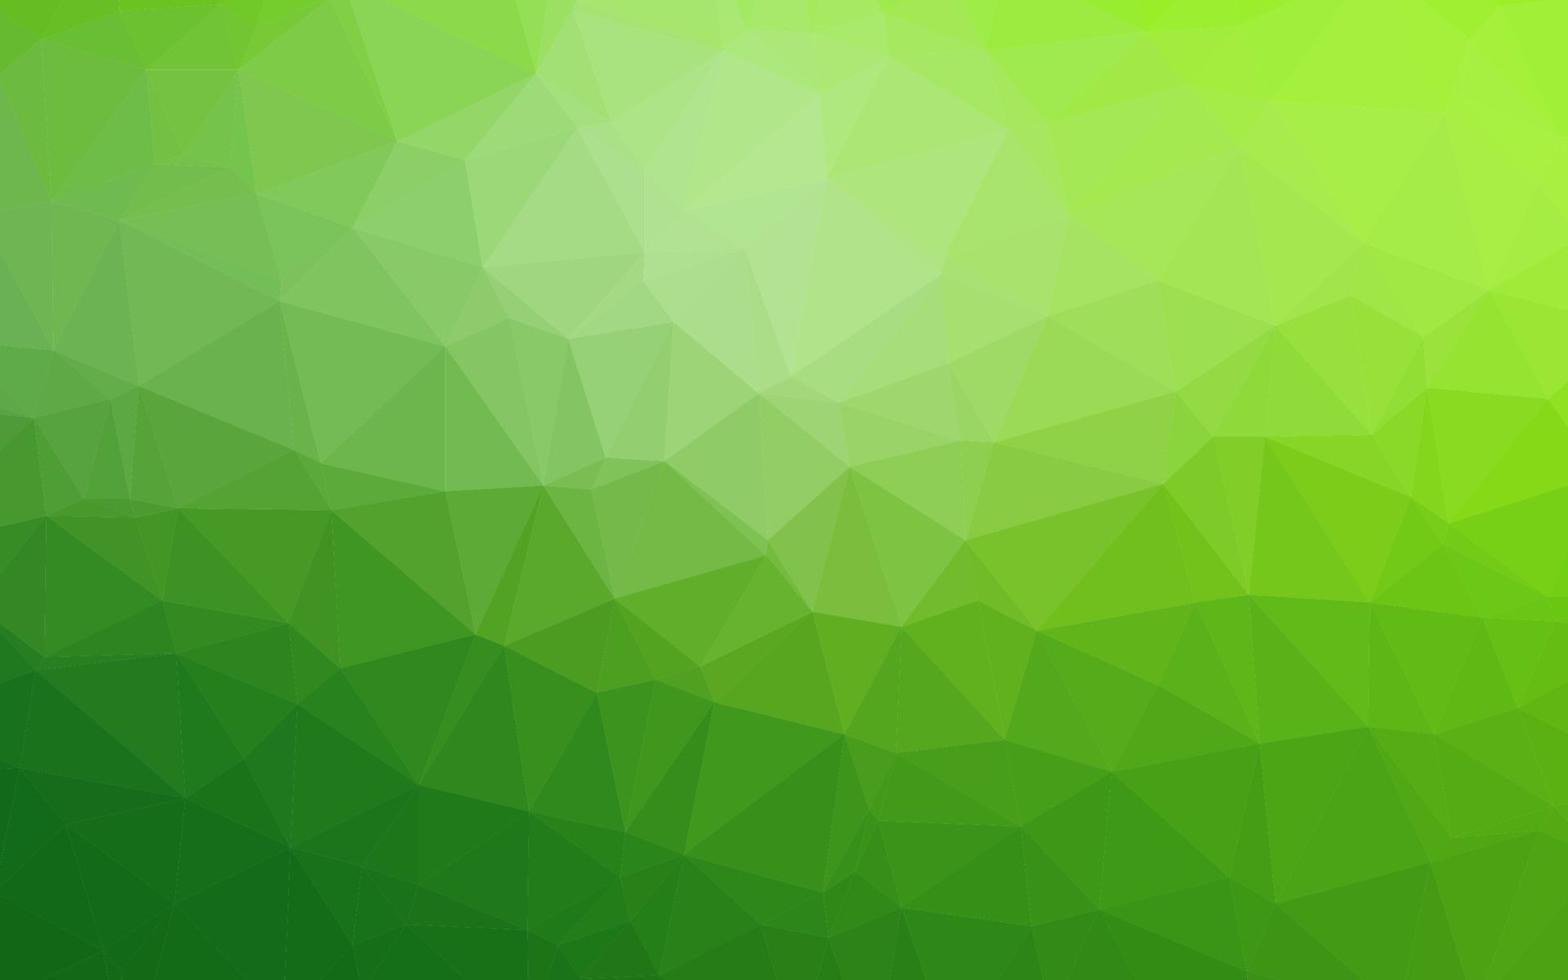 luz verde vetor brilhante padrão triangular.